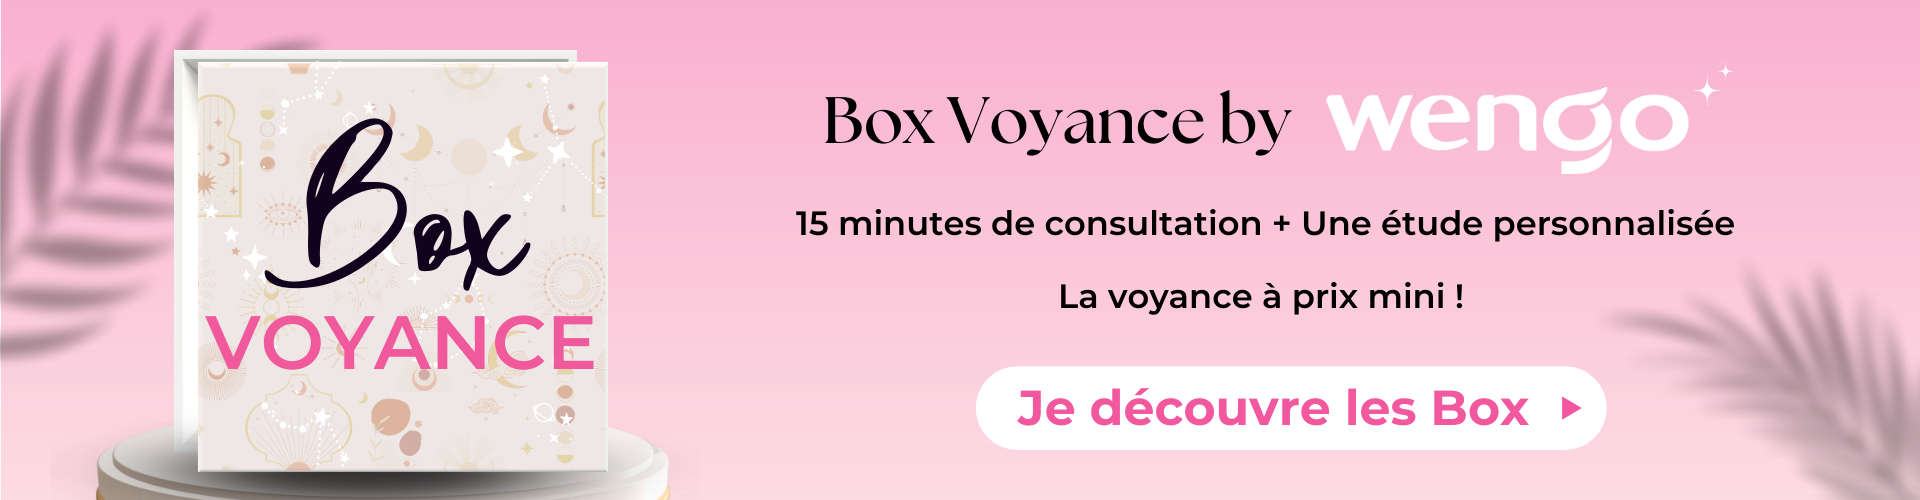 Box Voyance